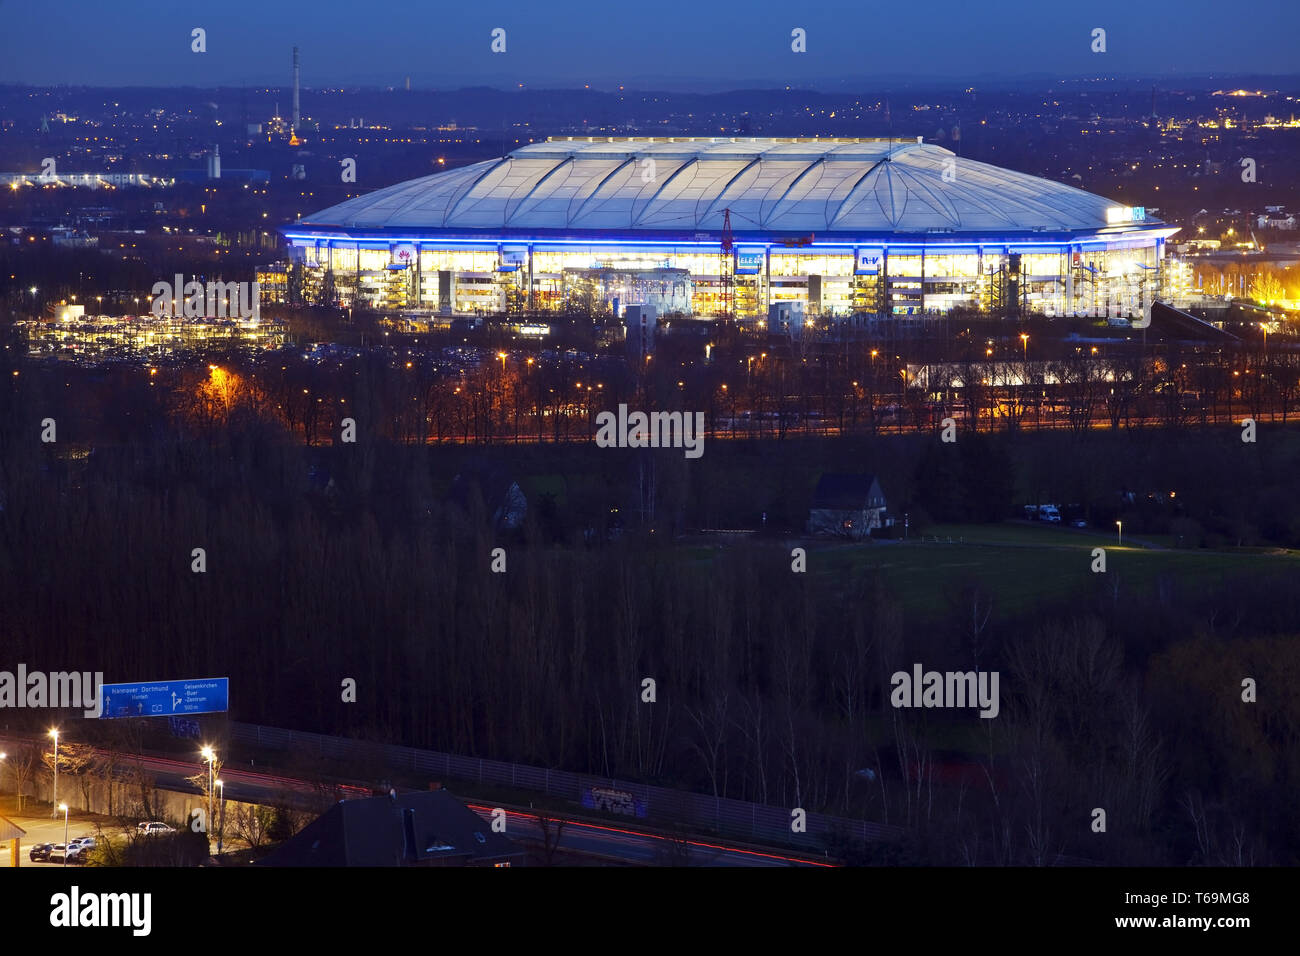 Le stade de football Veltins-Arena illuminé de Schalke 04 au crépuscule, Gelsenkirchen, Allemagne Banque D'Images